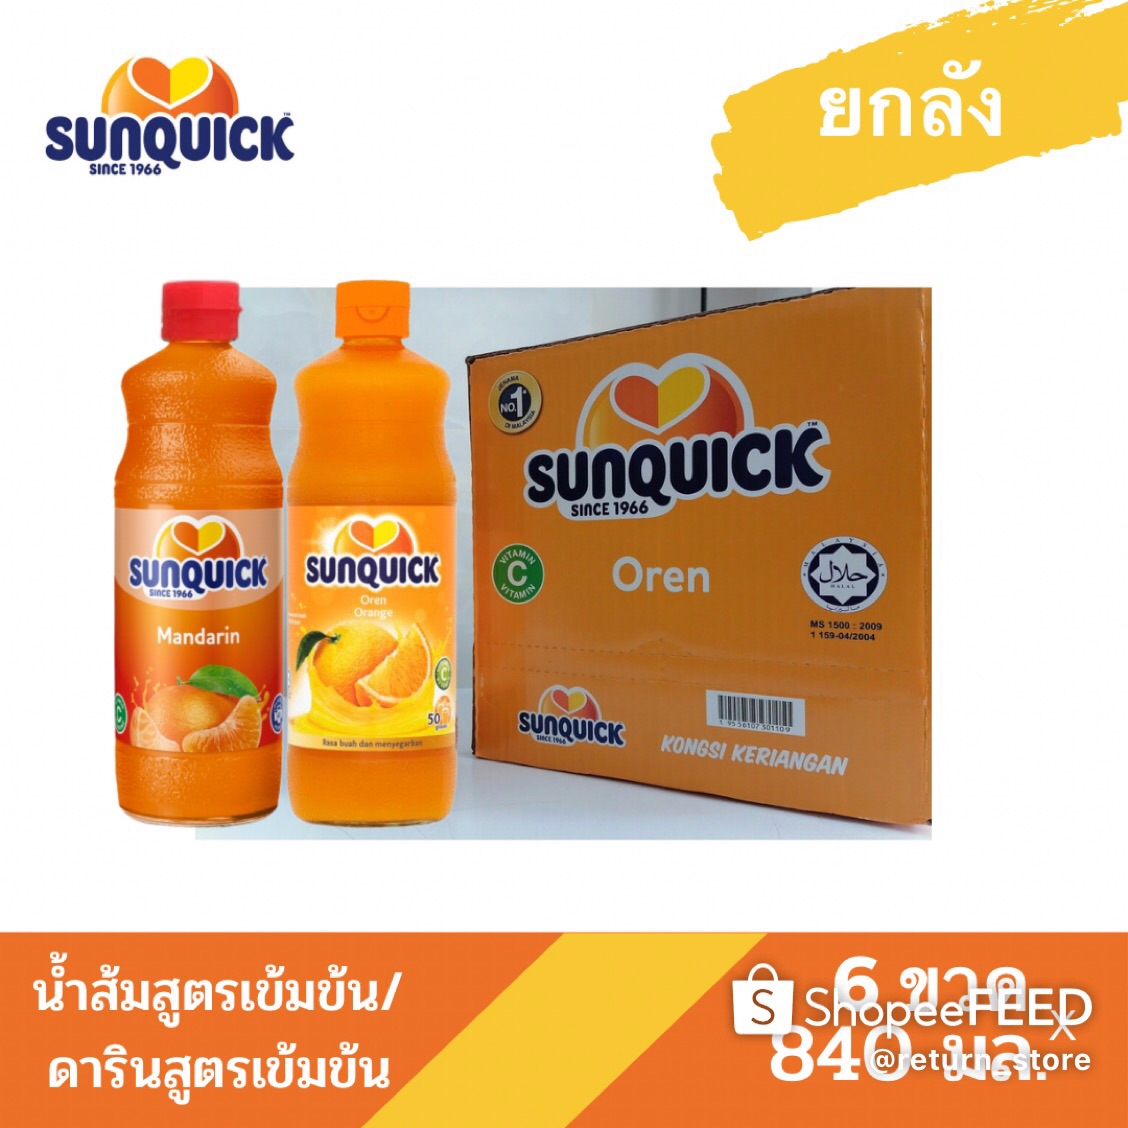 [ยกลังสุดคุ้ม] Sunquick น้ำส้มซันควิกสูตรเข้มข้นและน้ำส้มซันควิกแมนดารินสูตรเข้มข้น  ขนาด 840 มล. x 6 ขวด